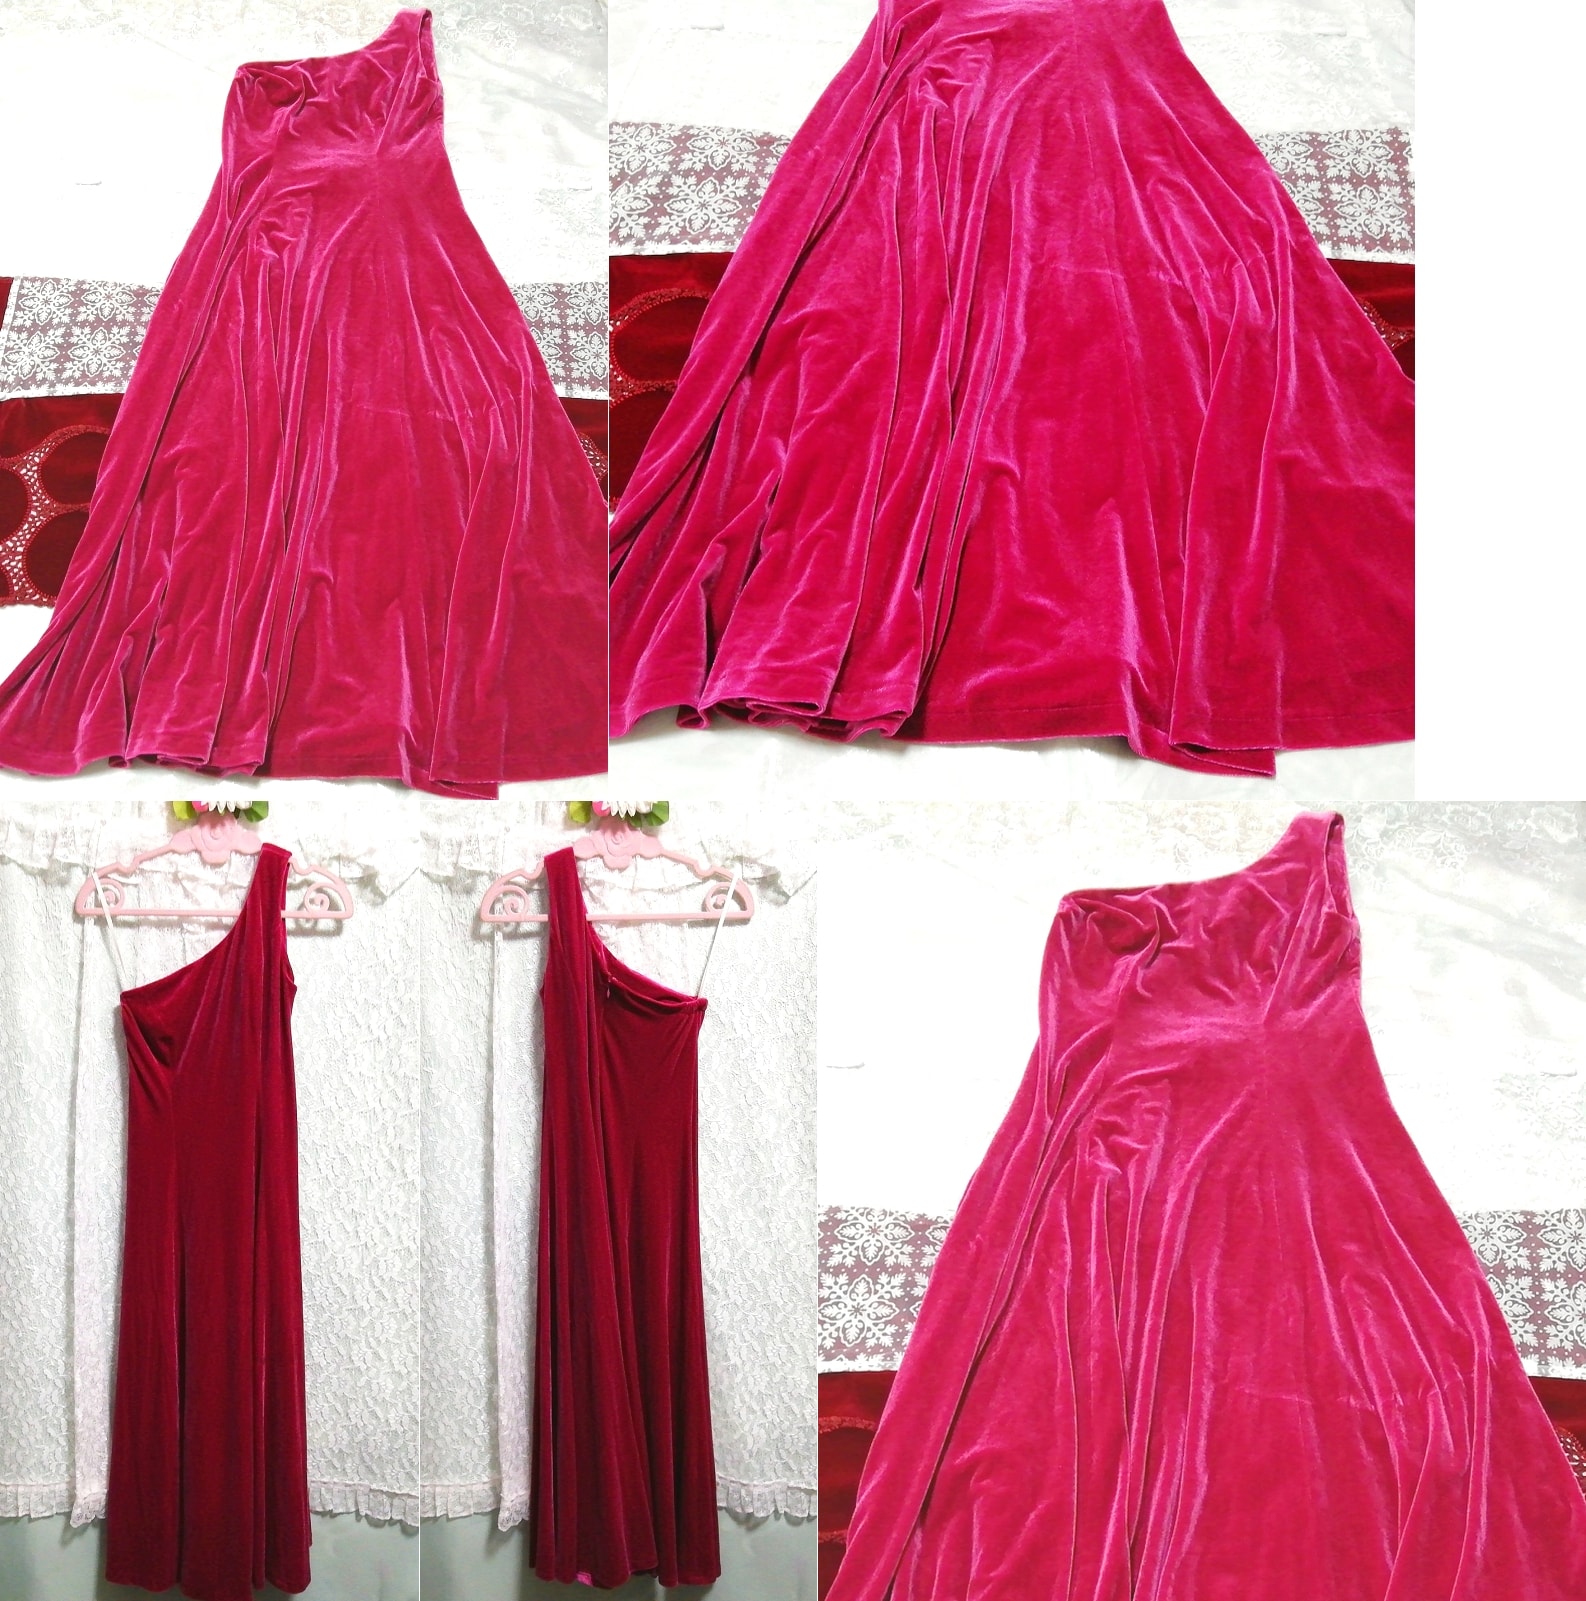 洋红色丝绒长睡衣无袖连衣裙, 时尚, 女士时装, 睡衣